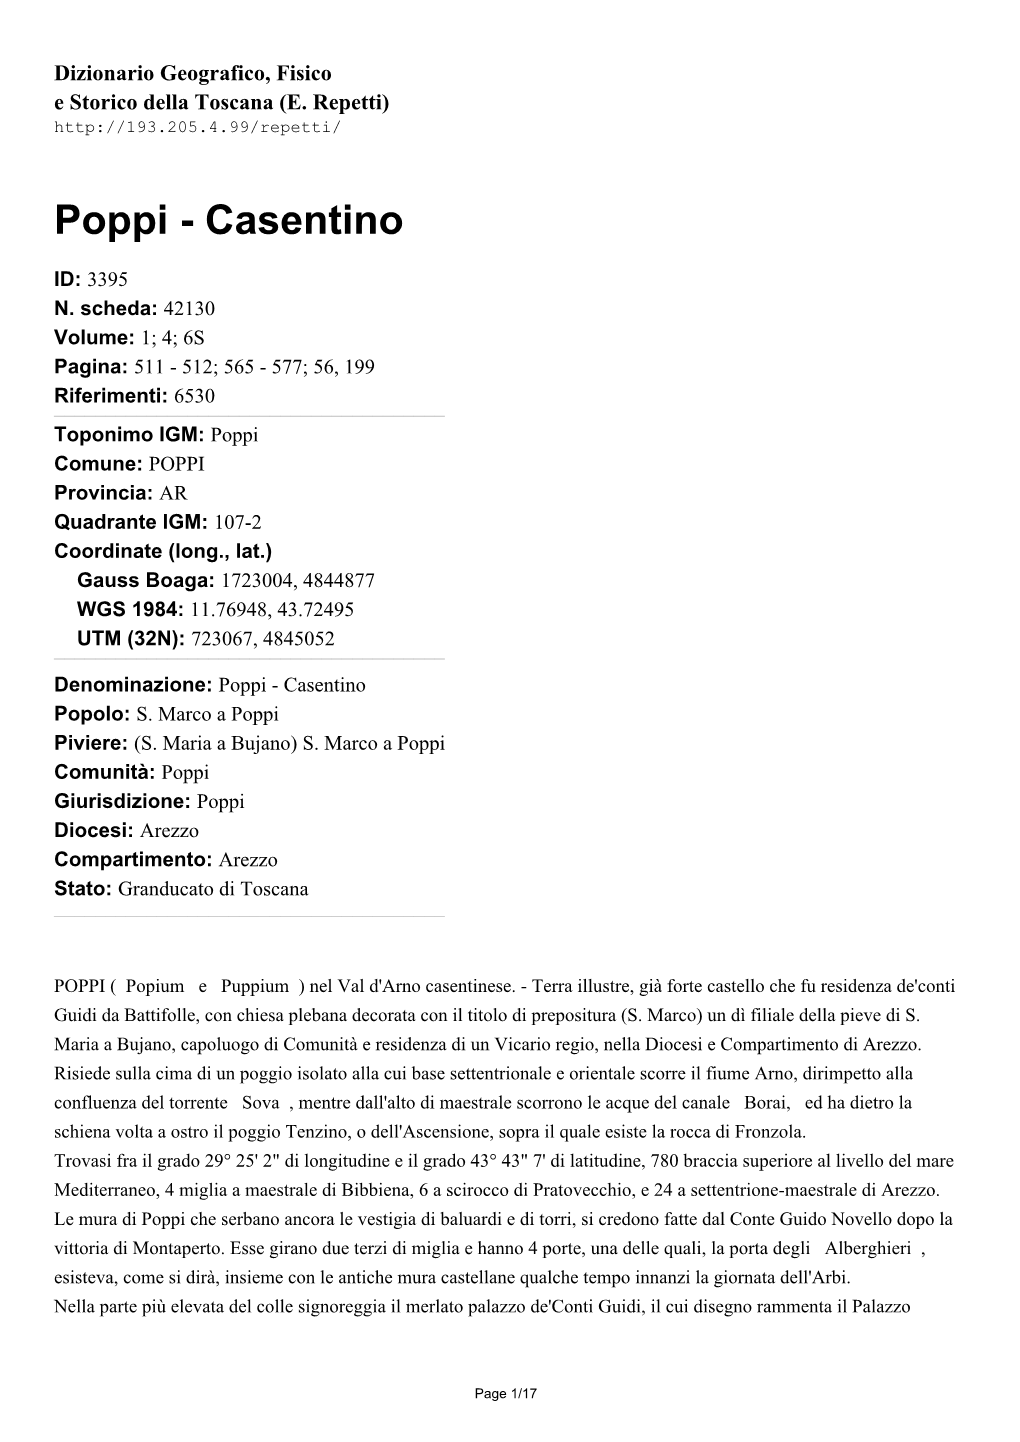 Poppi - Casentino